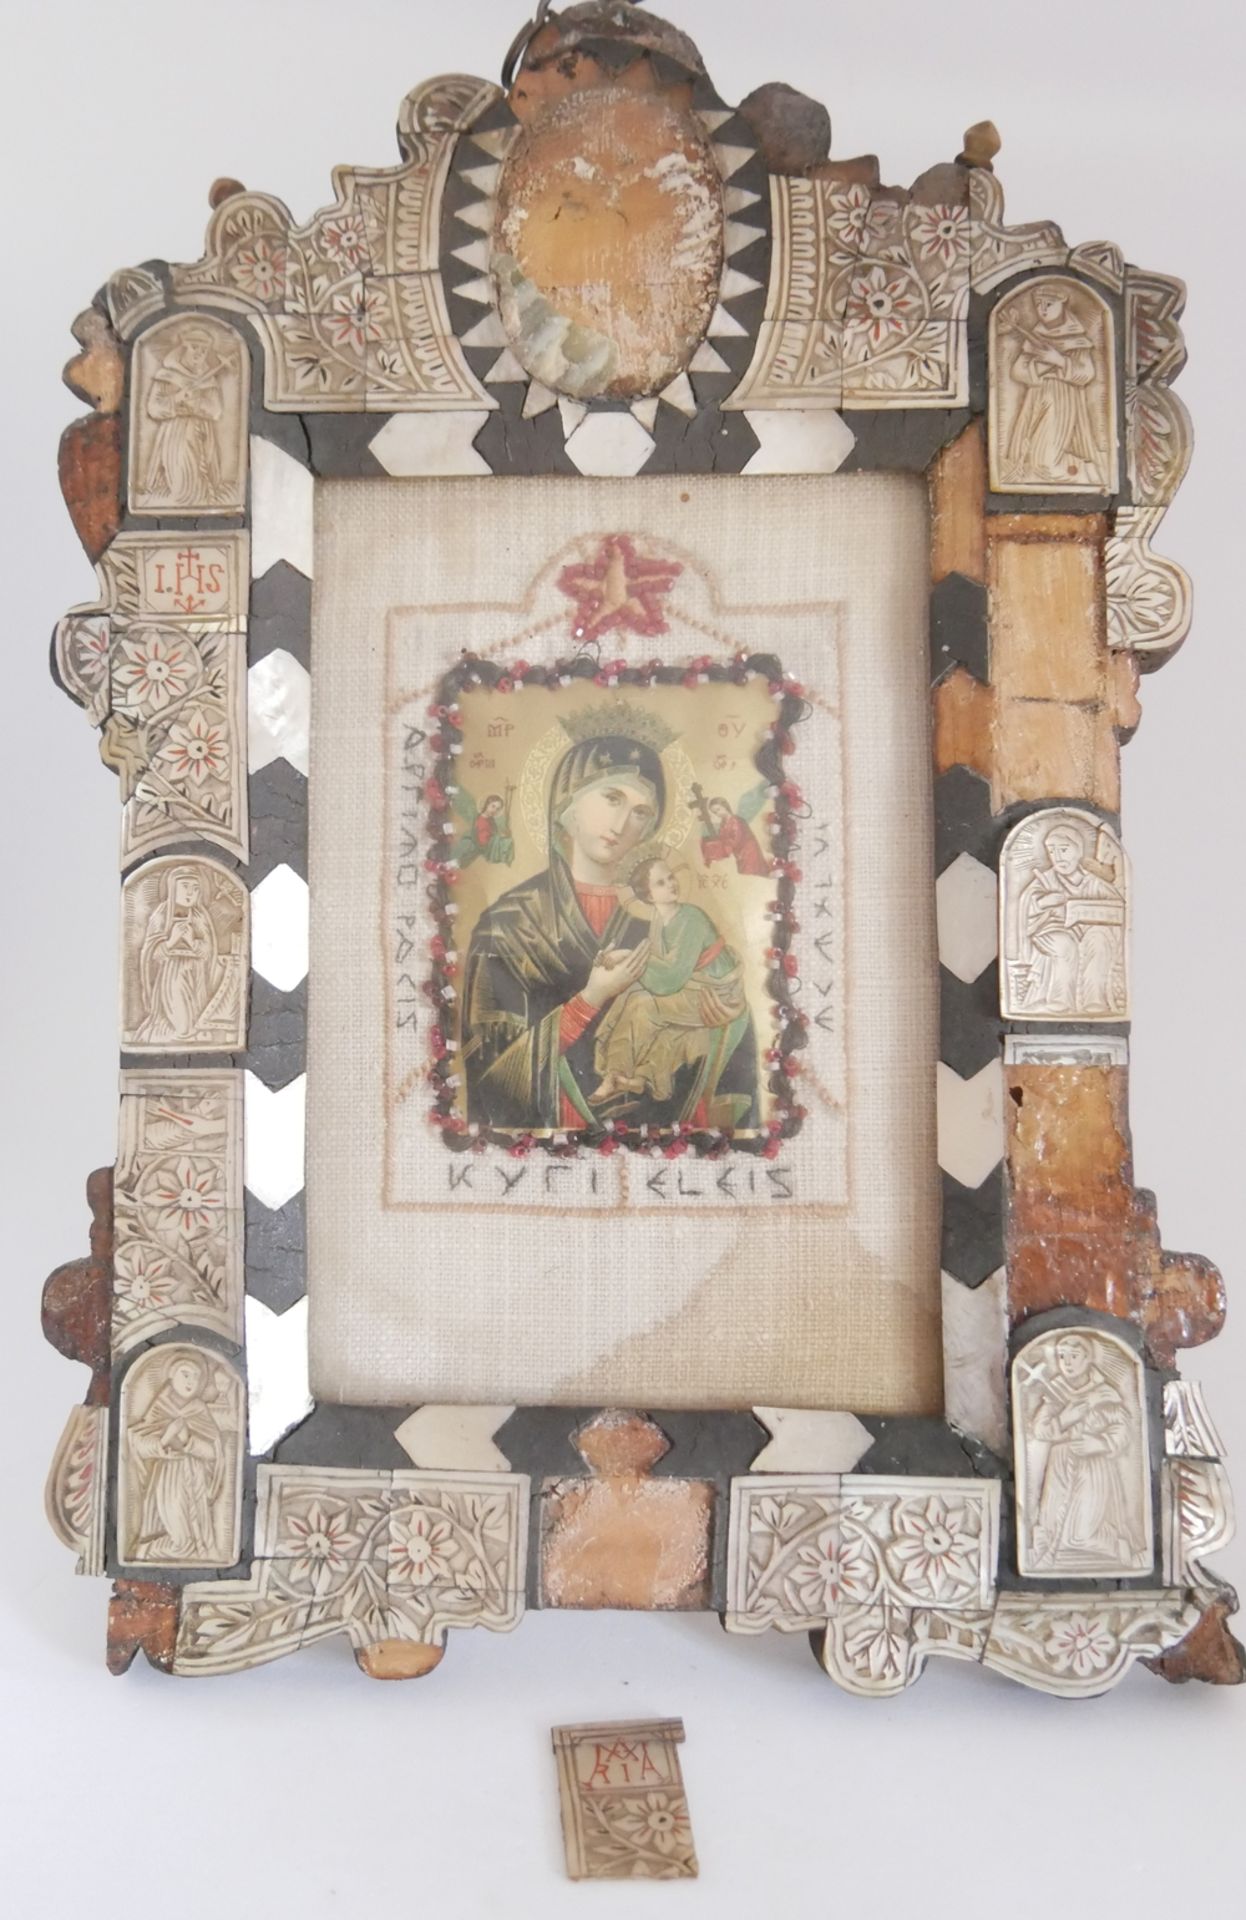 Russische Ikone Muttergottes / Jungfrau Maria. Rahmen mit Beschädigungen. Bitte besichtigen